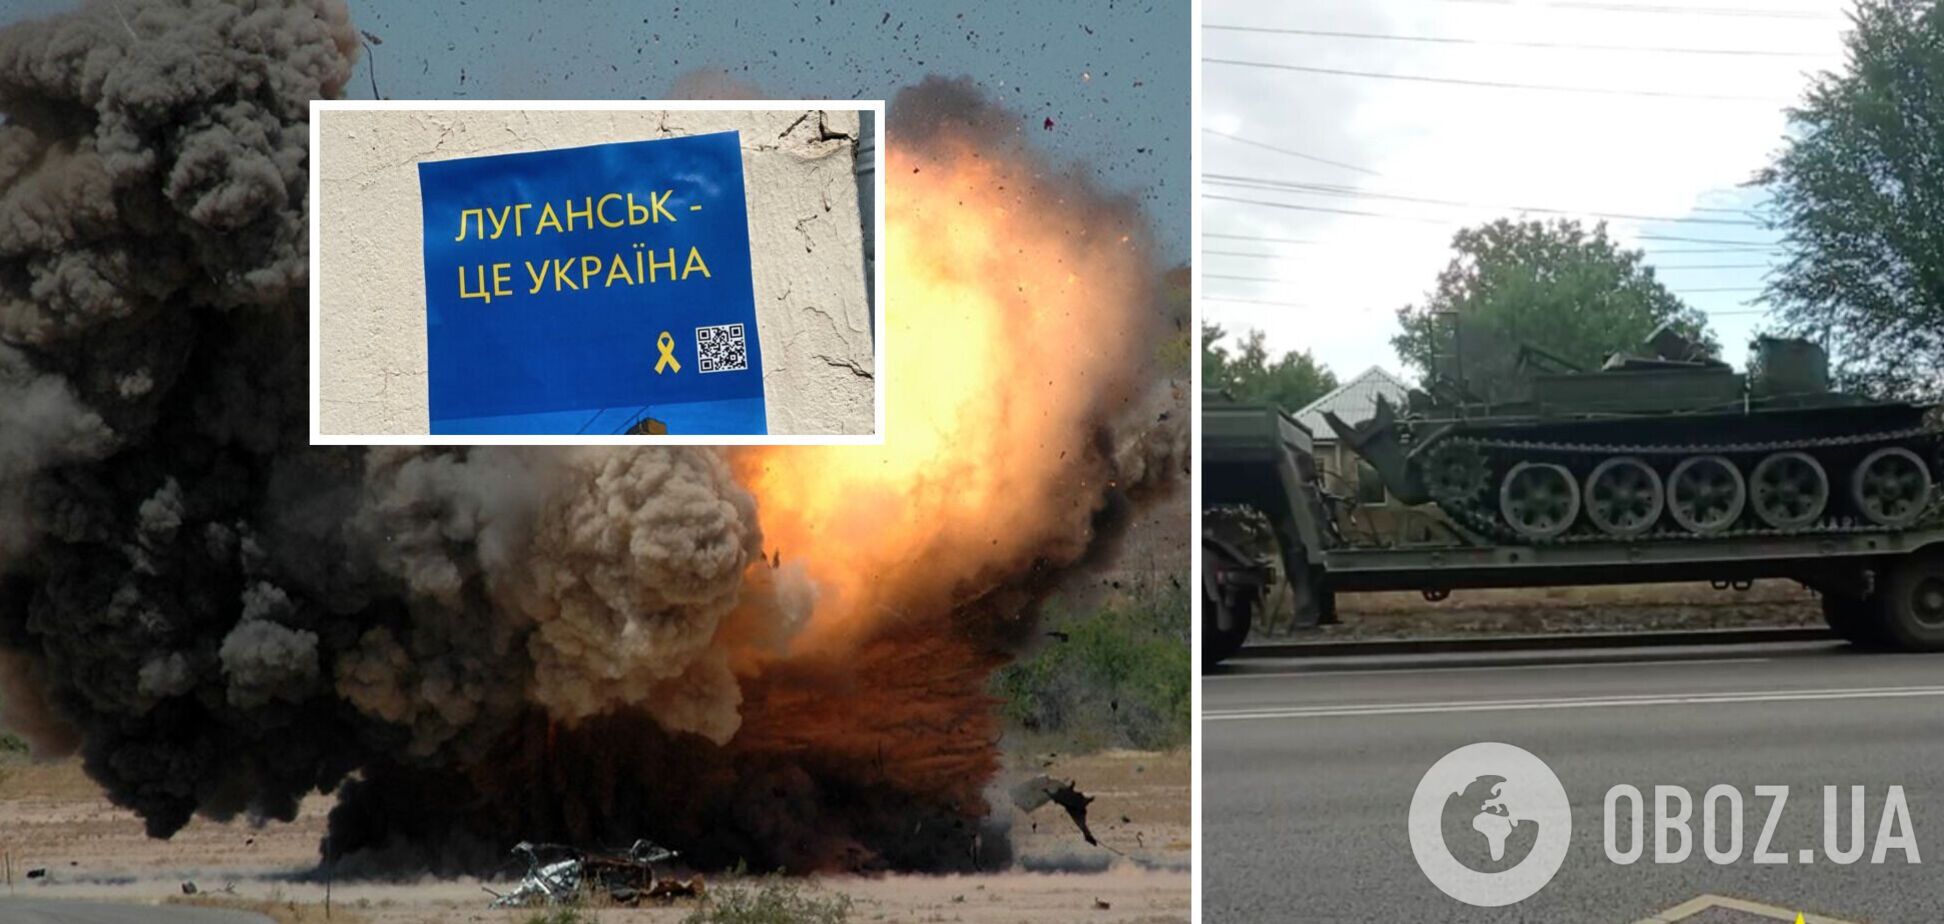 'Будет много 'курения' на складах': движение АТЕШ объявило партизанскую войну в оккупированном Луганске. Видео